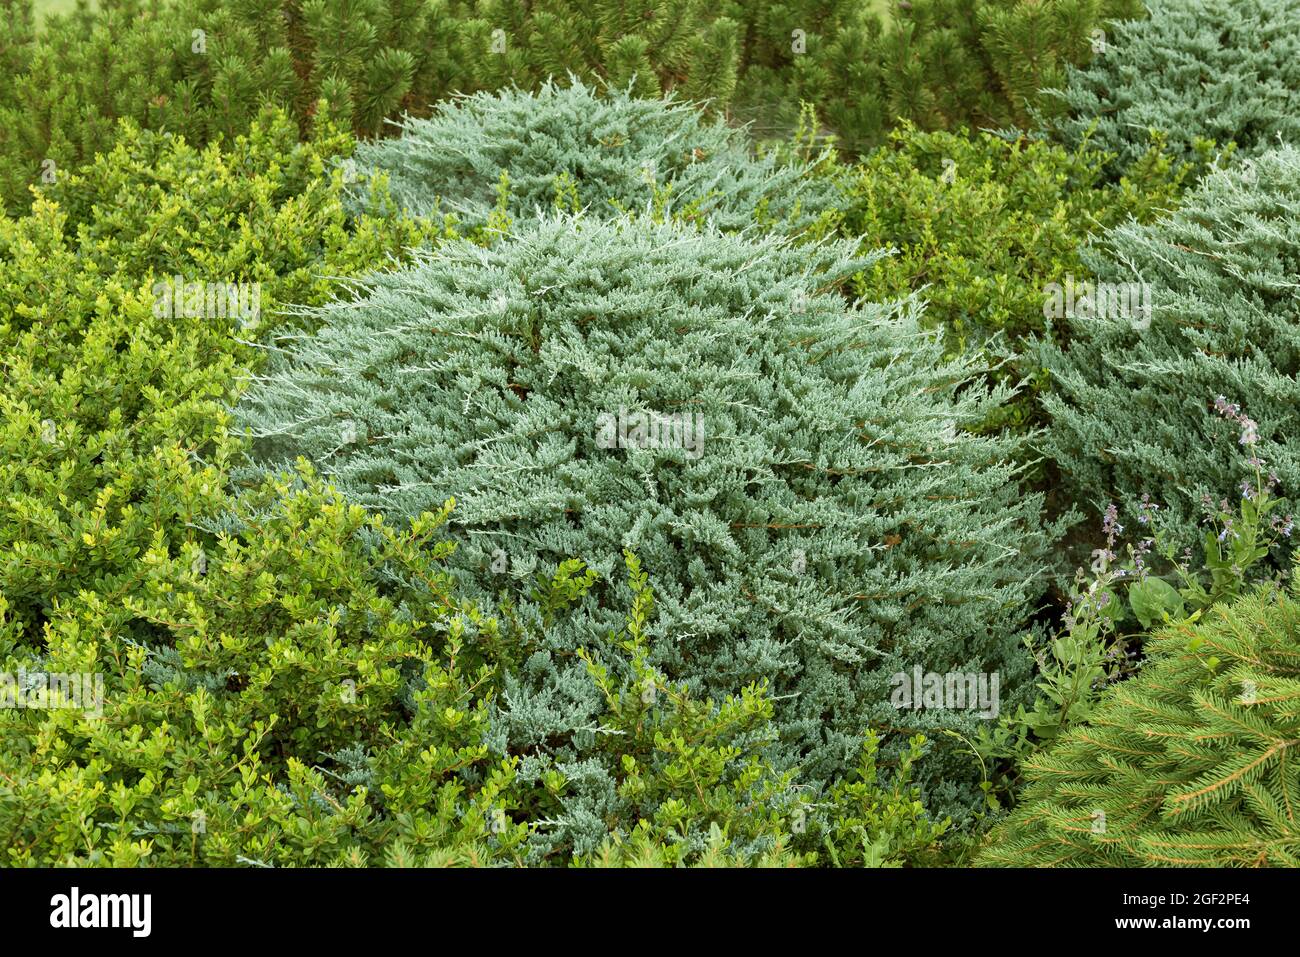 blue rug juniper, creeping juniper (Juniperus horizontalis 'Wiltonii', Juniperus horizontalis Wiltonii), cultivar Wiltonii Stock Photo